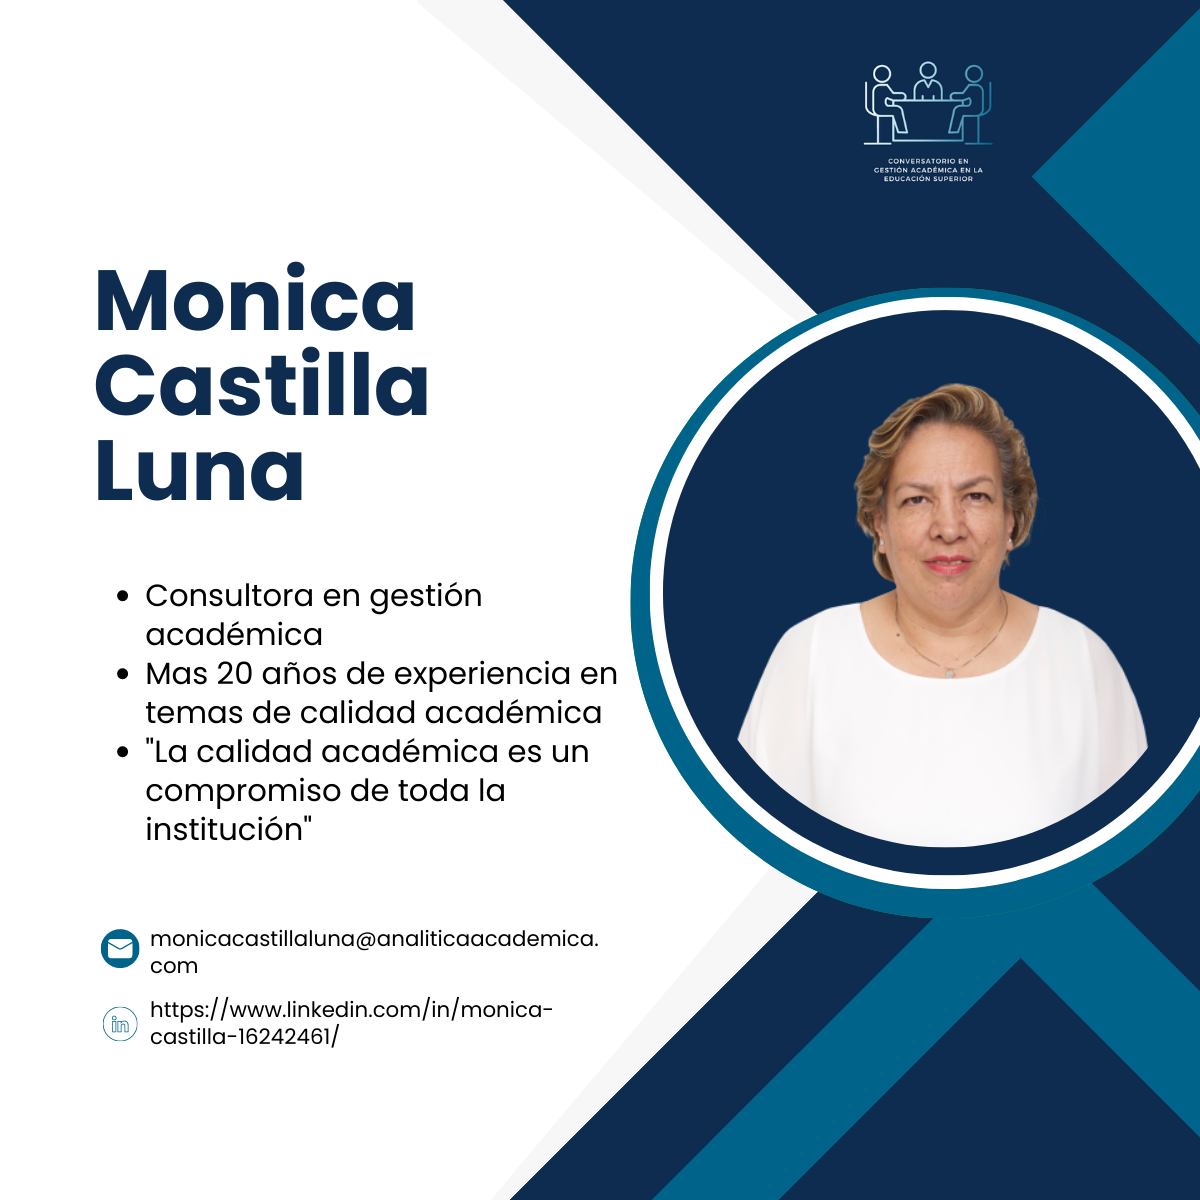 Monica Castilla